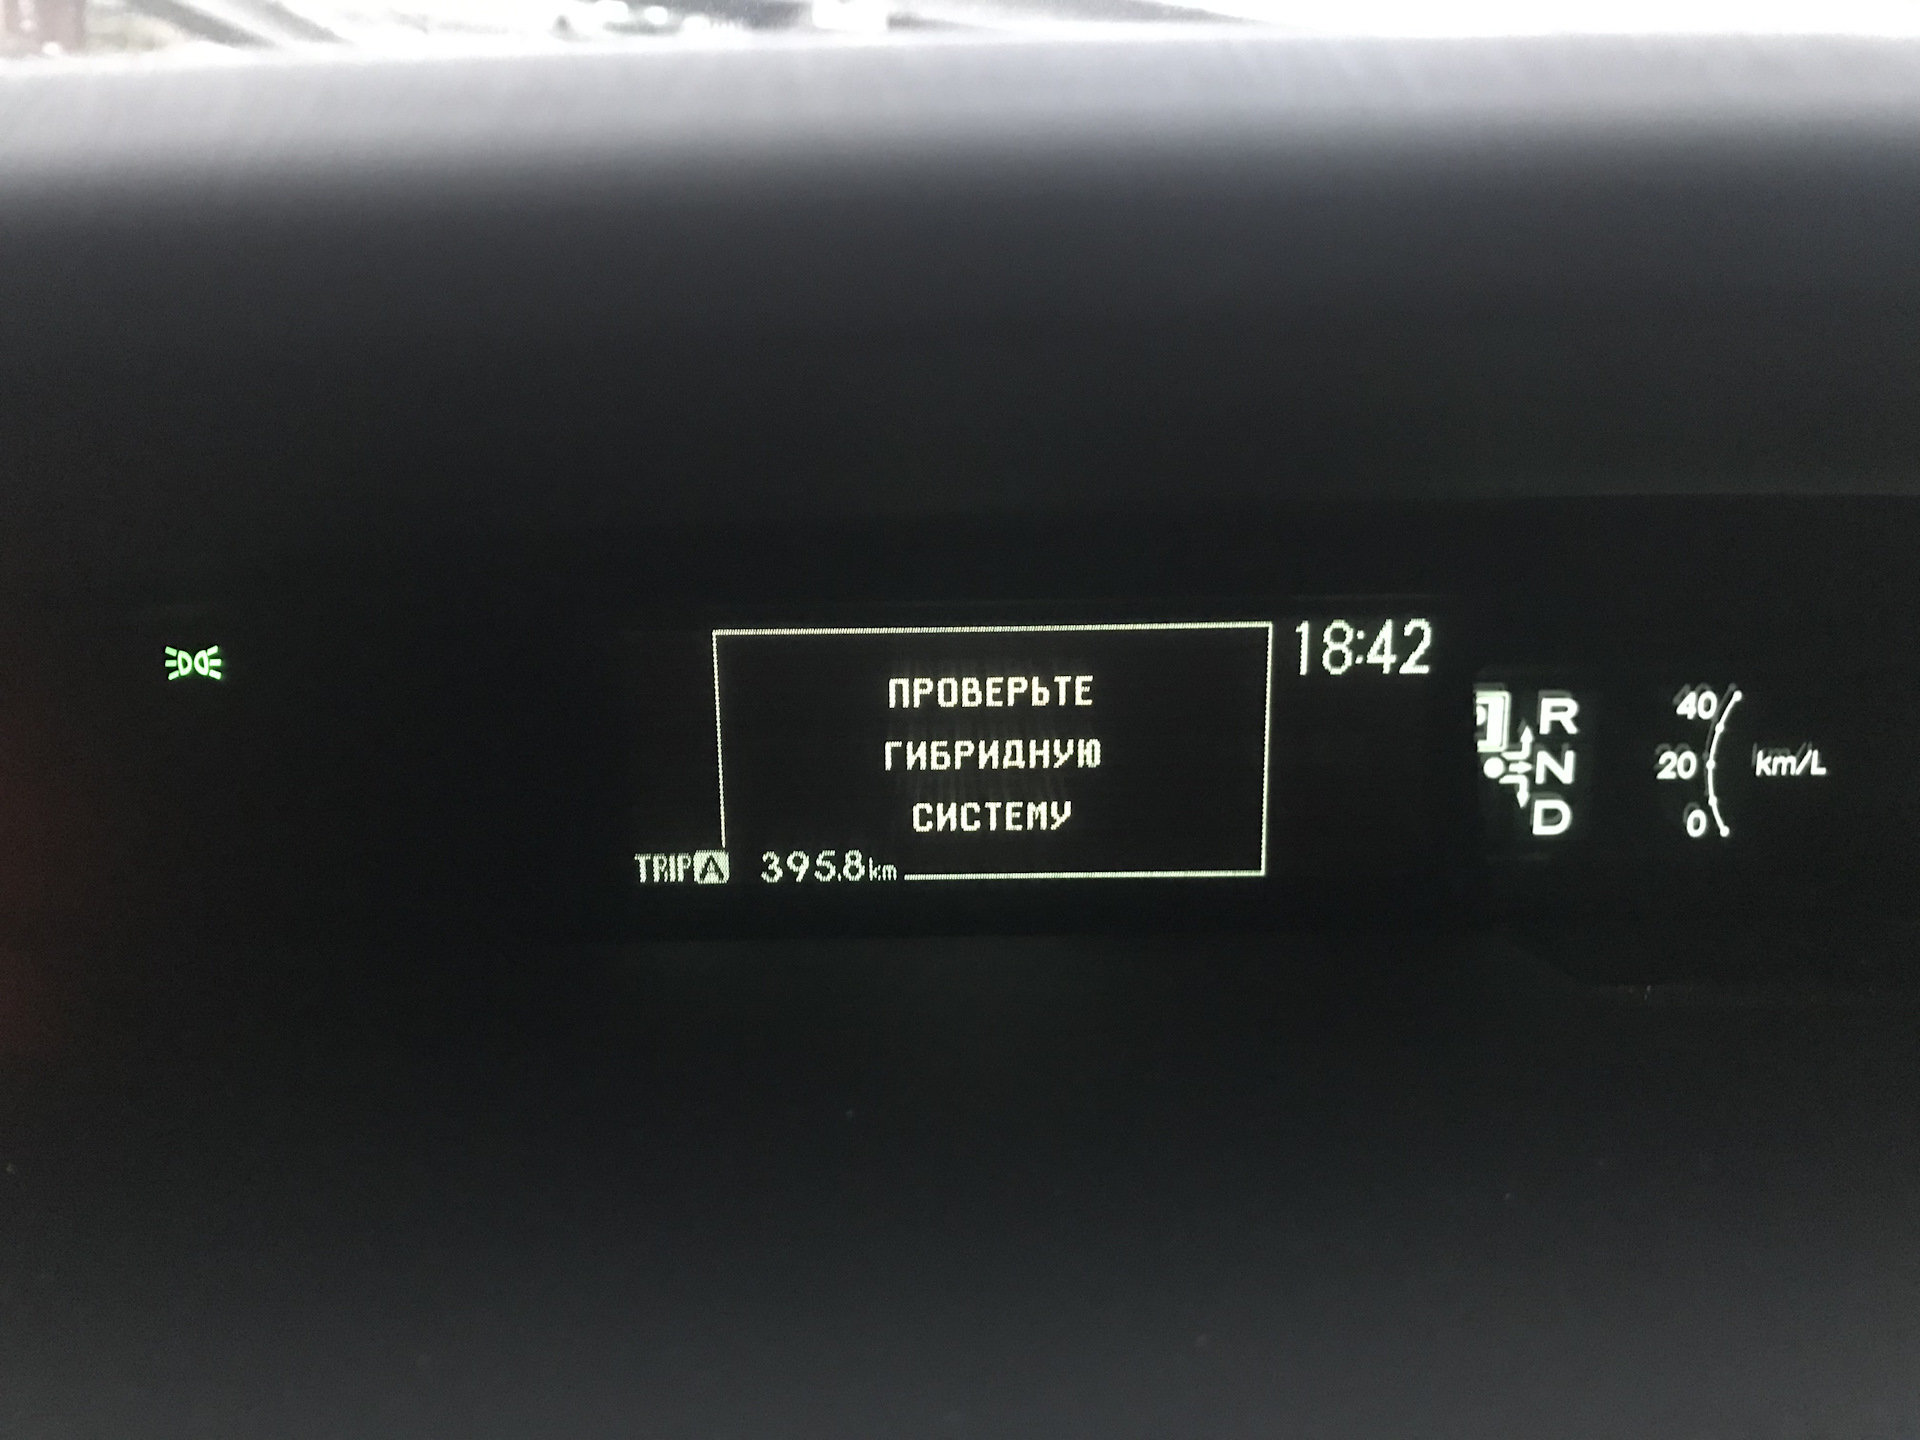 Приус 30 ошибки. P1116 Toyota Prius 20. Ошибка гибридной системы Приус 30. Приус зарядка батареи. Приус Альфа гибрид панель приборов.